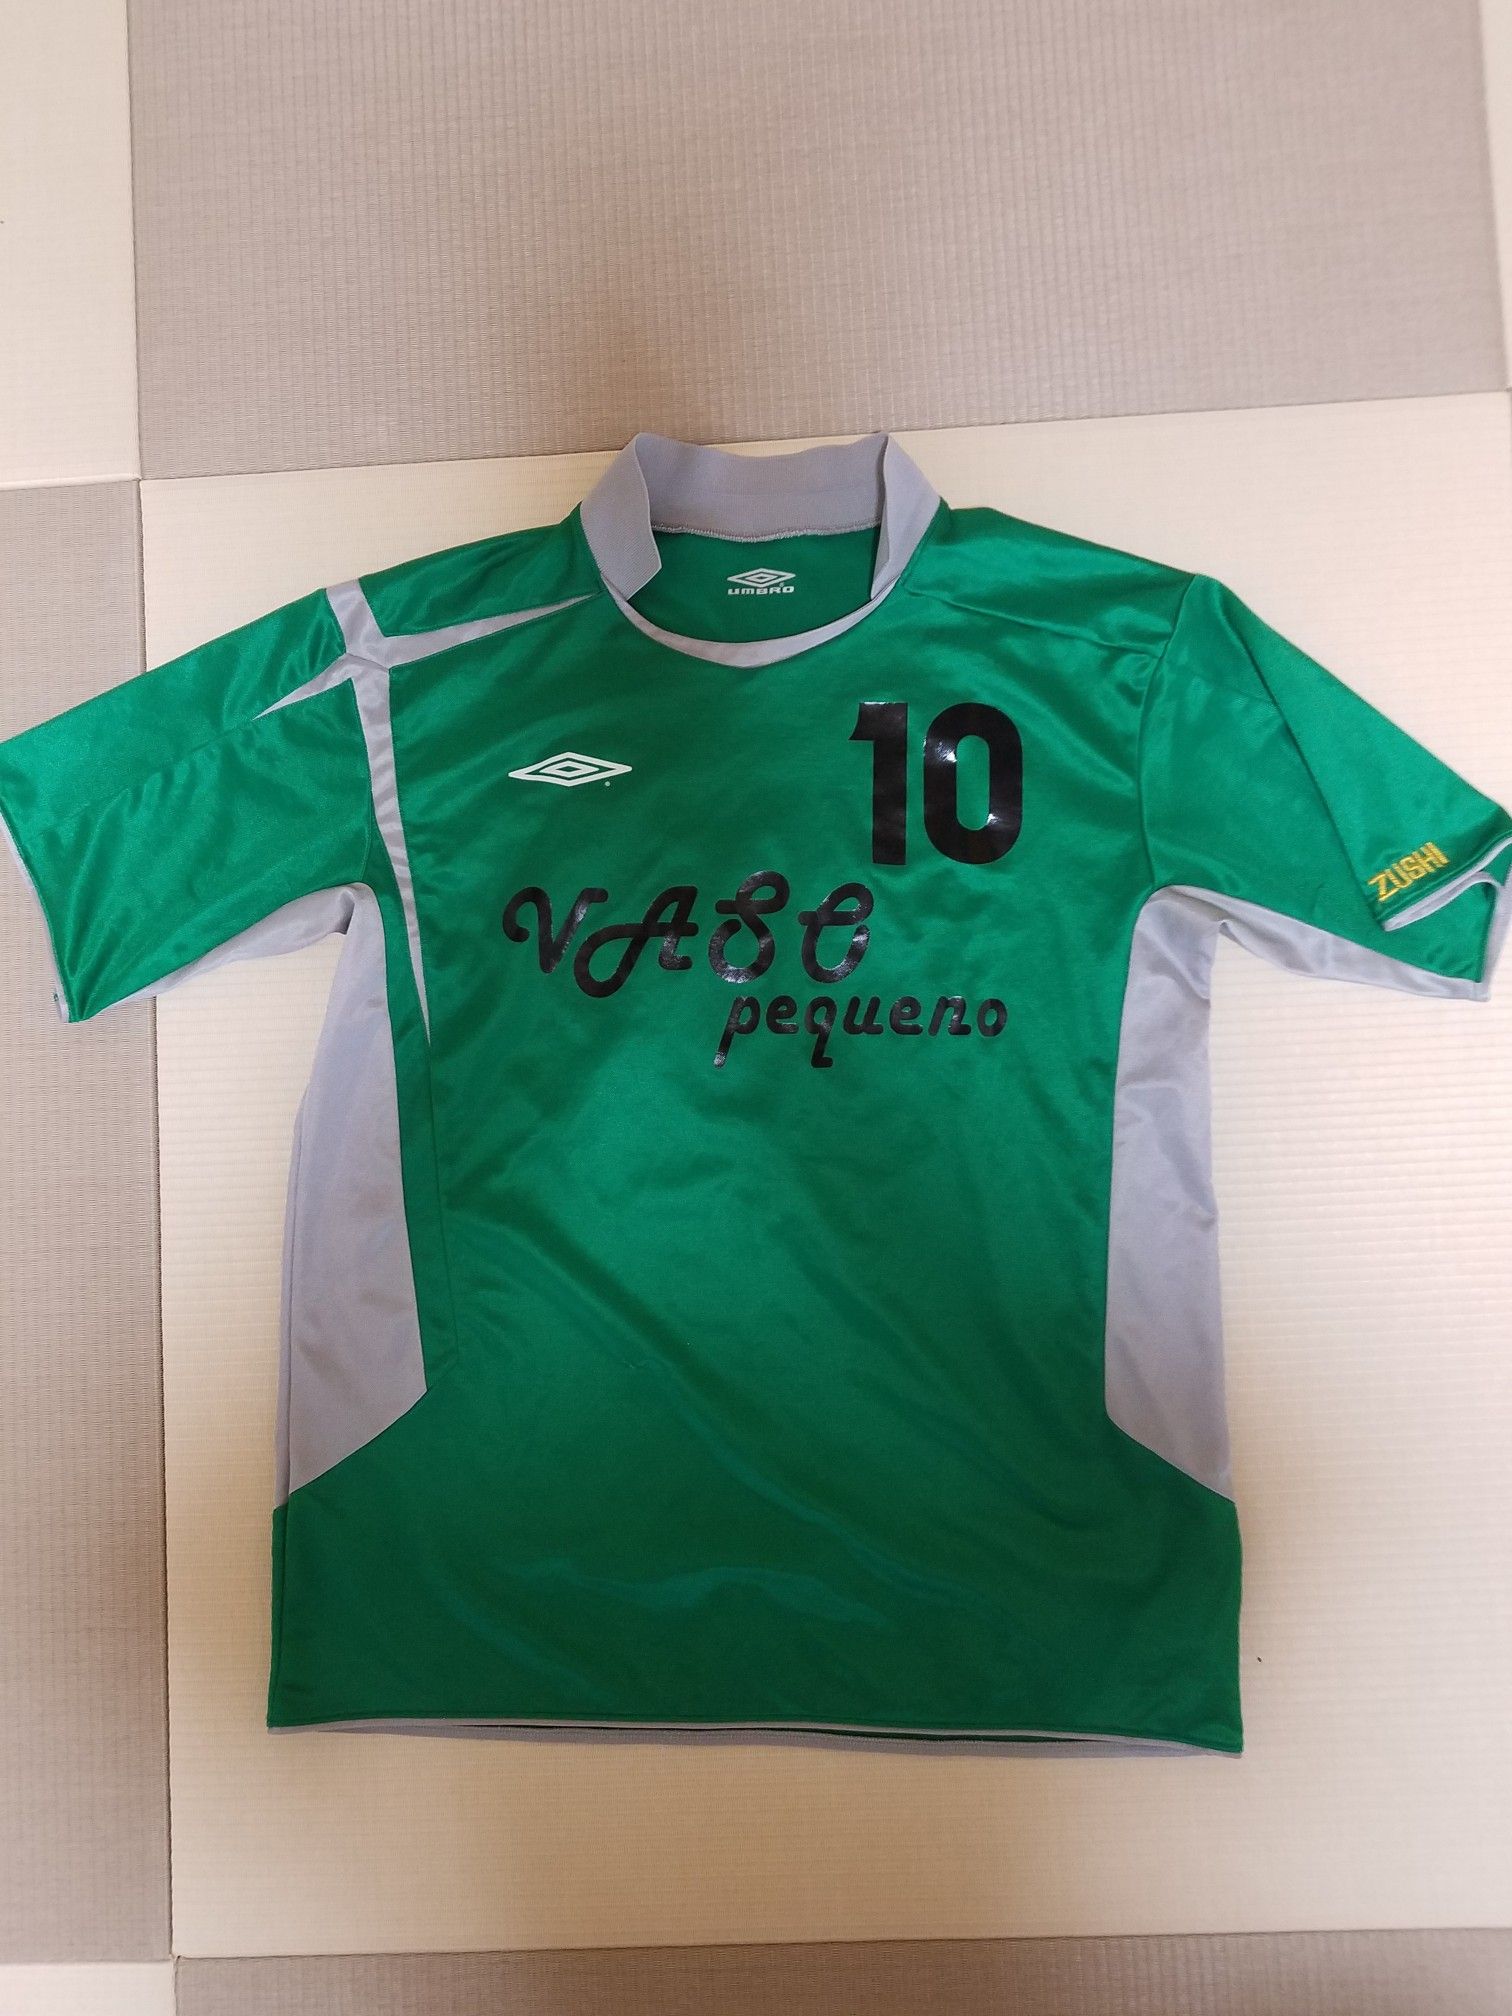 神奈川県社会人サッカー3fリーグ開幕 神奈川県少年サッカー 社会人サッカーがメインです 気ままに更新 楽天ブログ